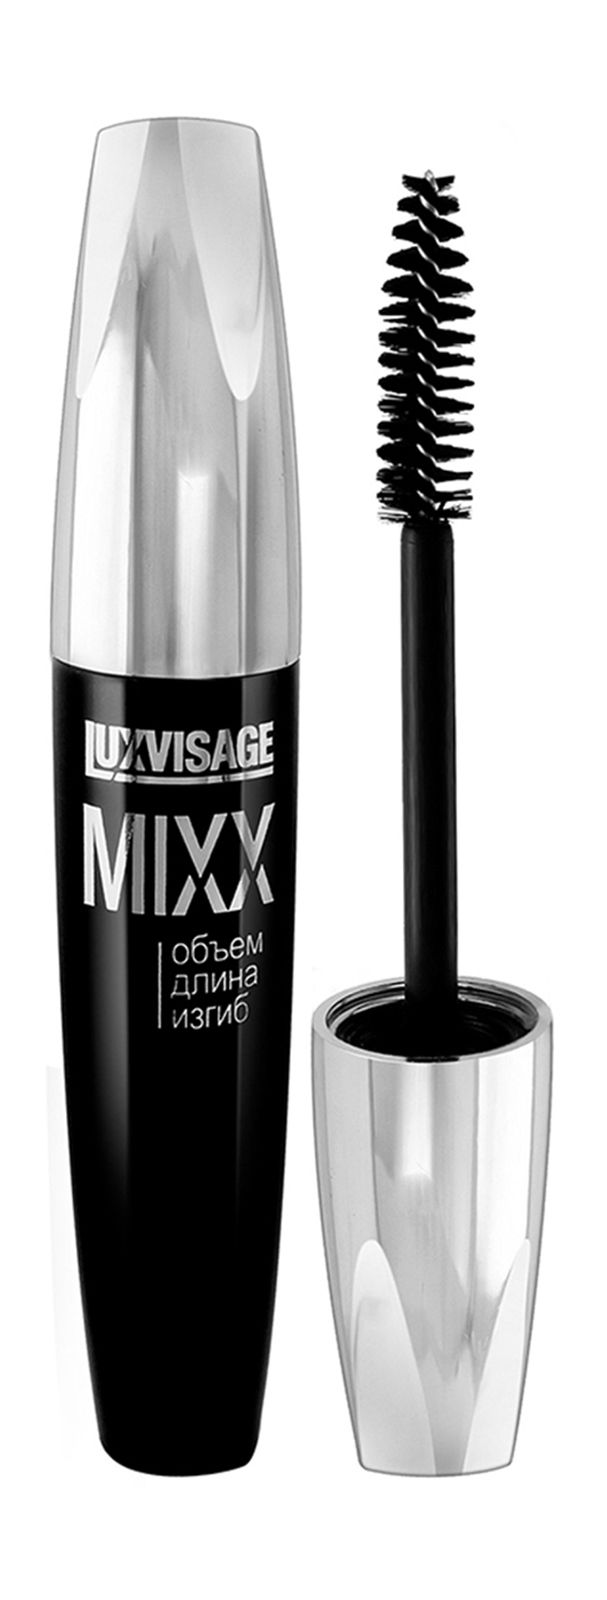 Люкс визаж смоки. LUXVISAGE Mixx тушь. Lux visage тушь Mixx 12г черная. Тушь для ресниц Mixx объём, длина, изгиб 12г LUXVISAGE/6/М. LUXVISAGE тушь для ресниц Mixx объём длина изгиб 12 г.